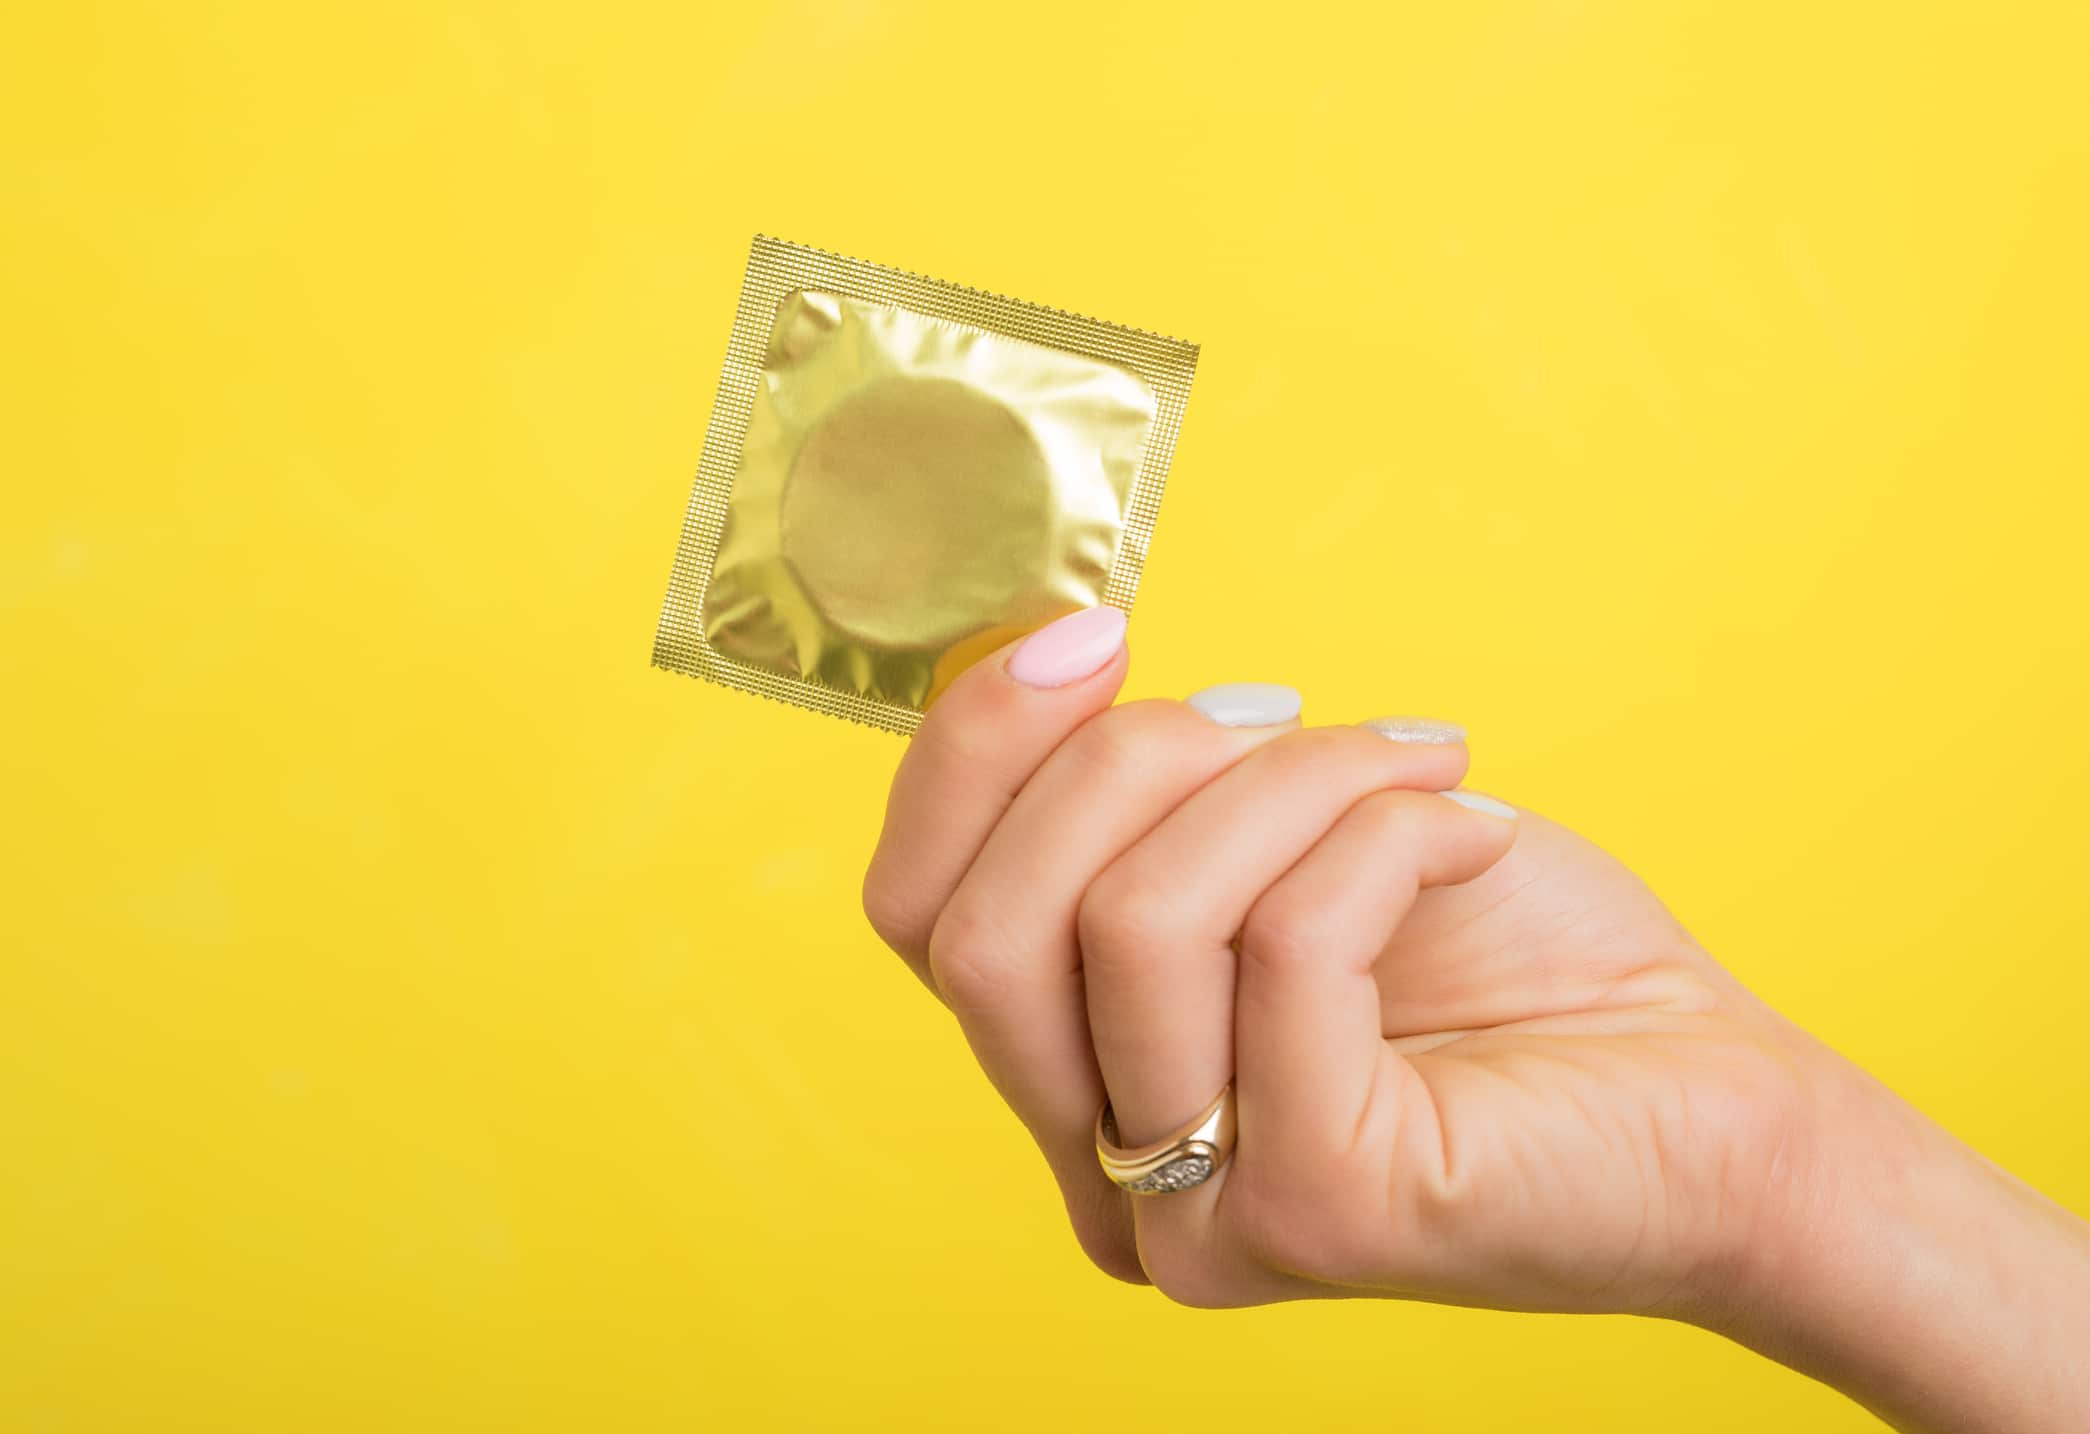  Mão feminina segurando um preservativo